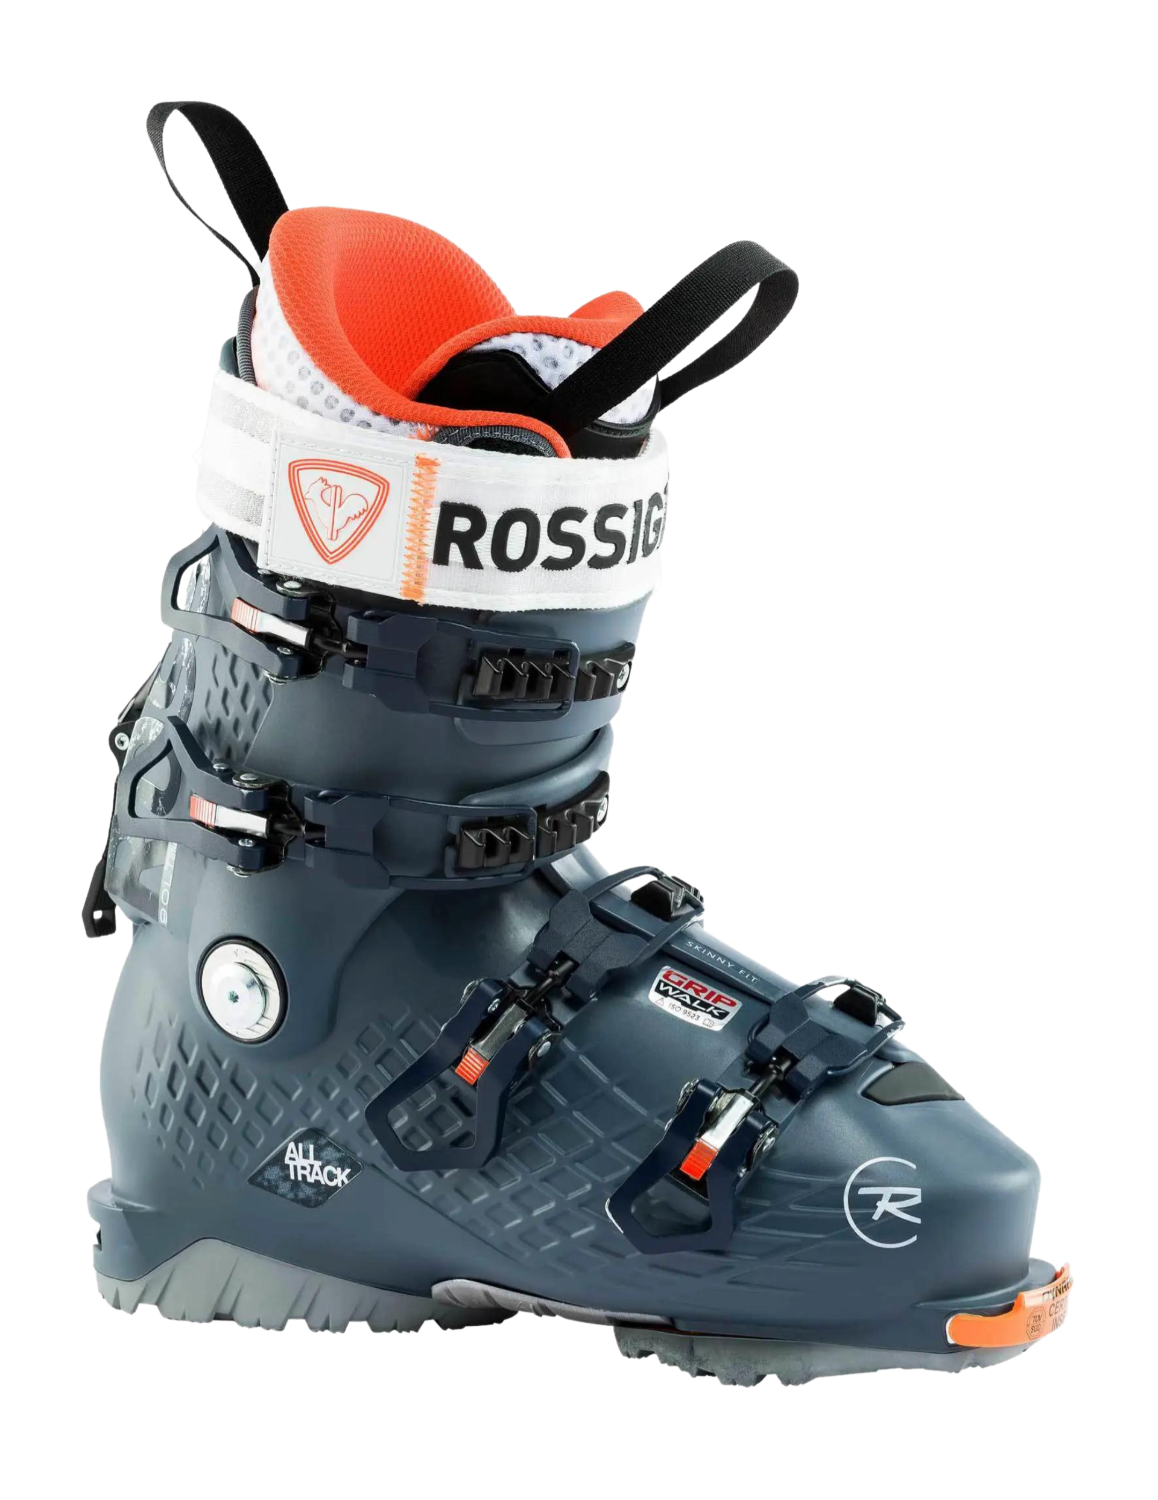 Chaussures de ski de randonnée ROSSIGNOL Alltrack Elite 90 LT Femme : coque Generative Design Grid offrant une épaisseur minimisée de la paroi de la chaussure pour une utilisation optimale du matériau afin de gagner en légèreté et d'améliorer le transfert d'énergie